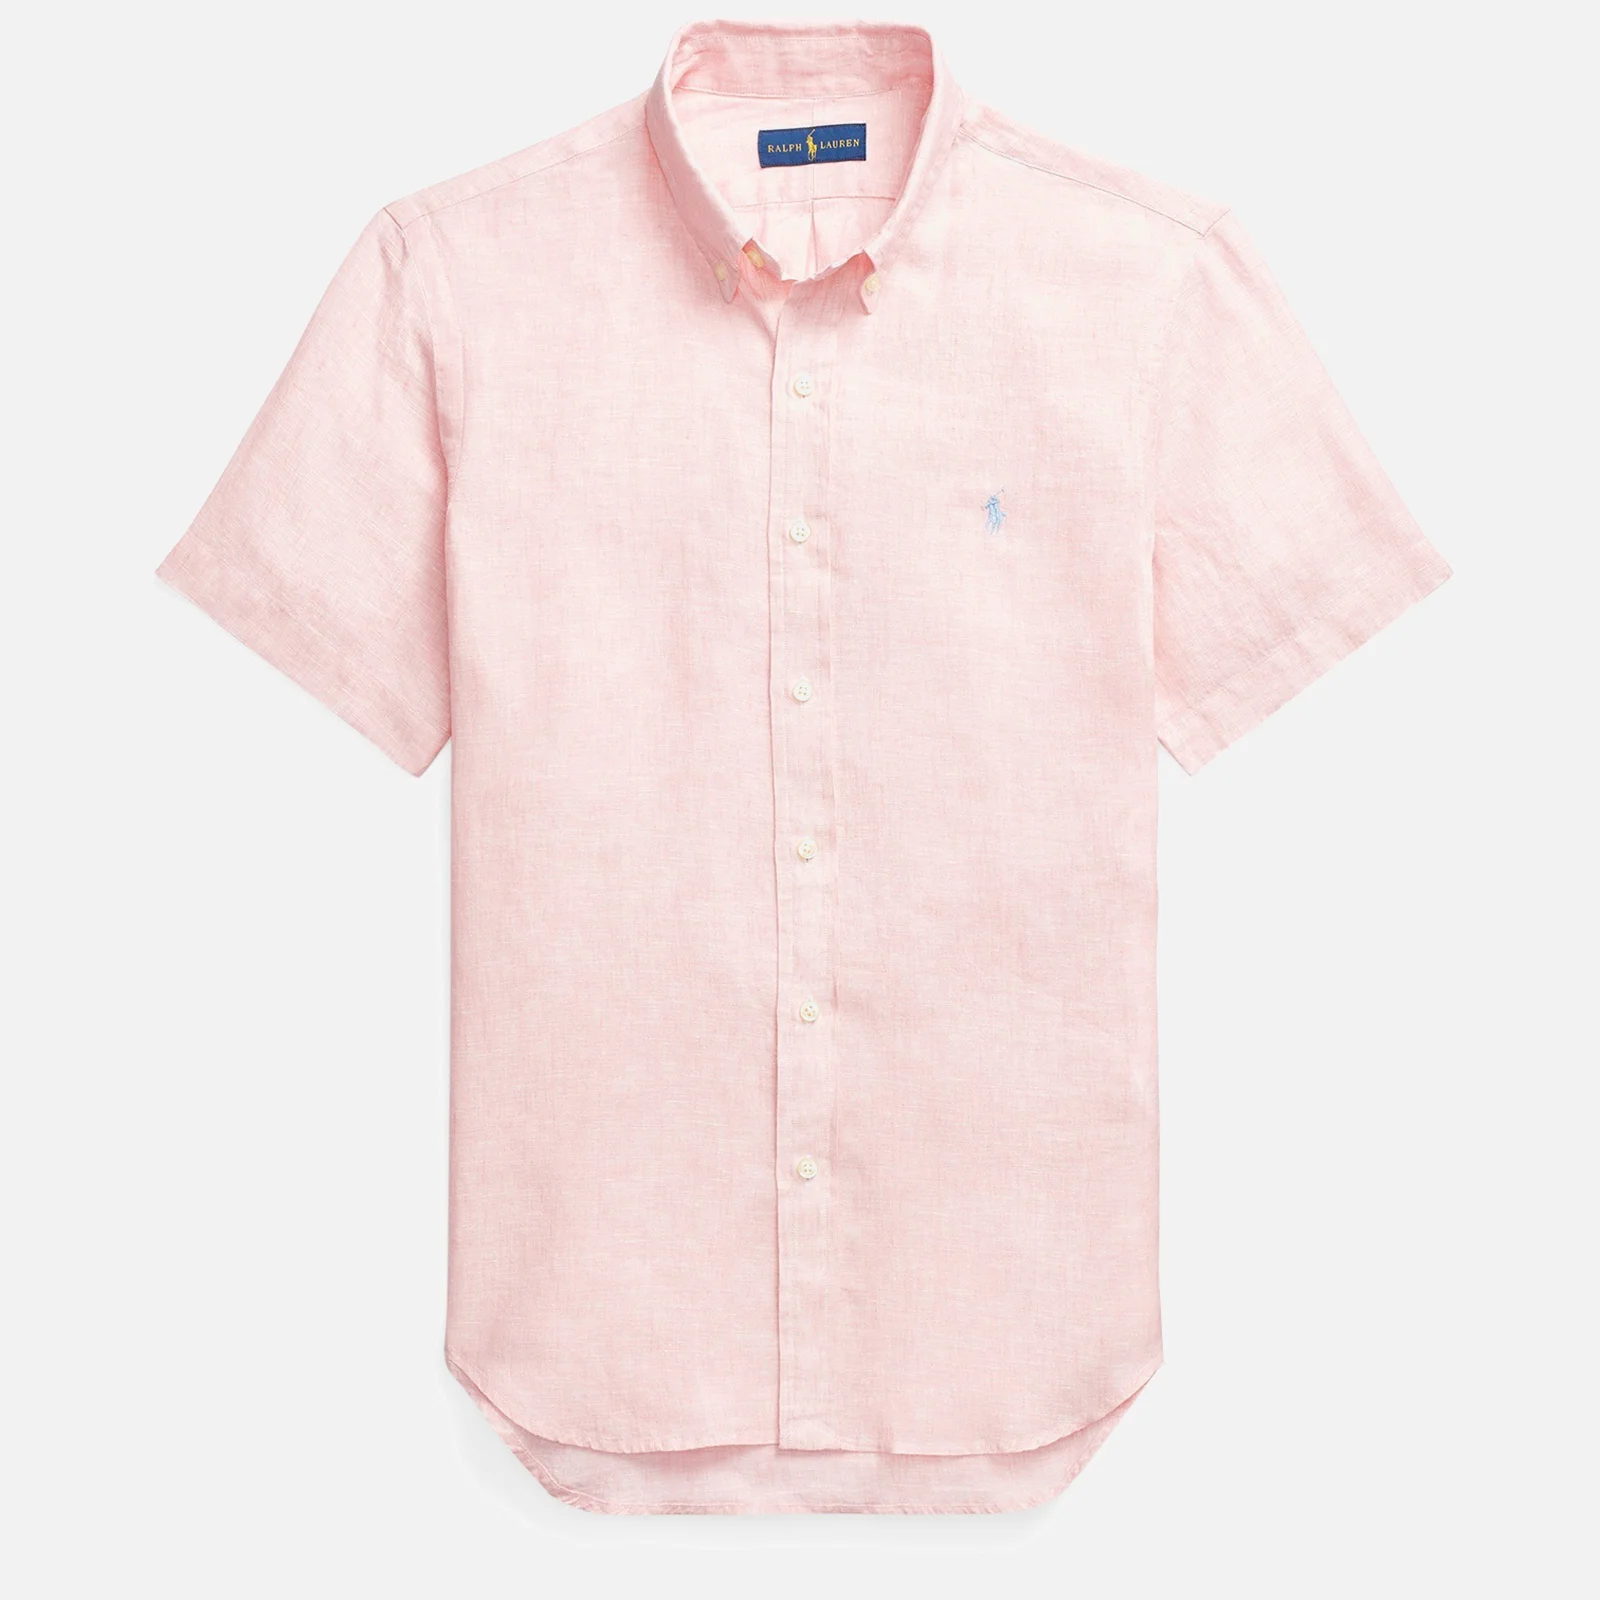 Polo Ralph Lauren Men's Slim Fit Linen Short Sleeve Shirt - Light Pink Image 1